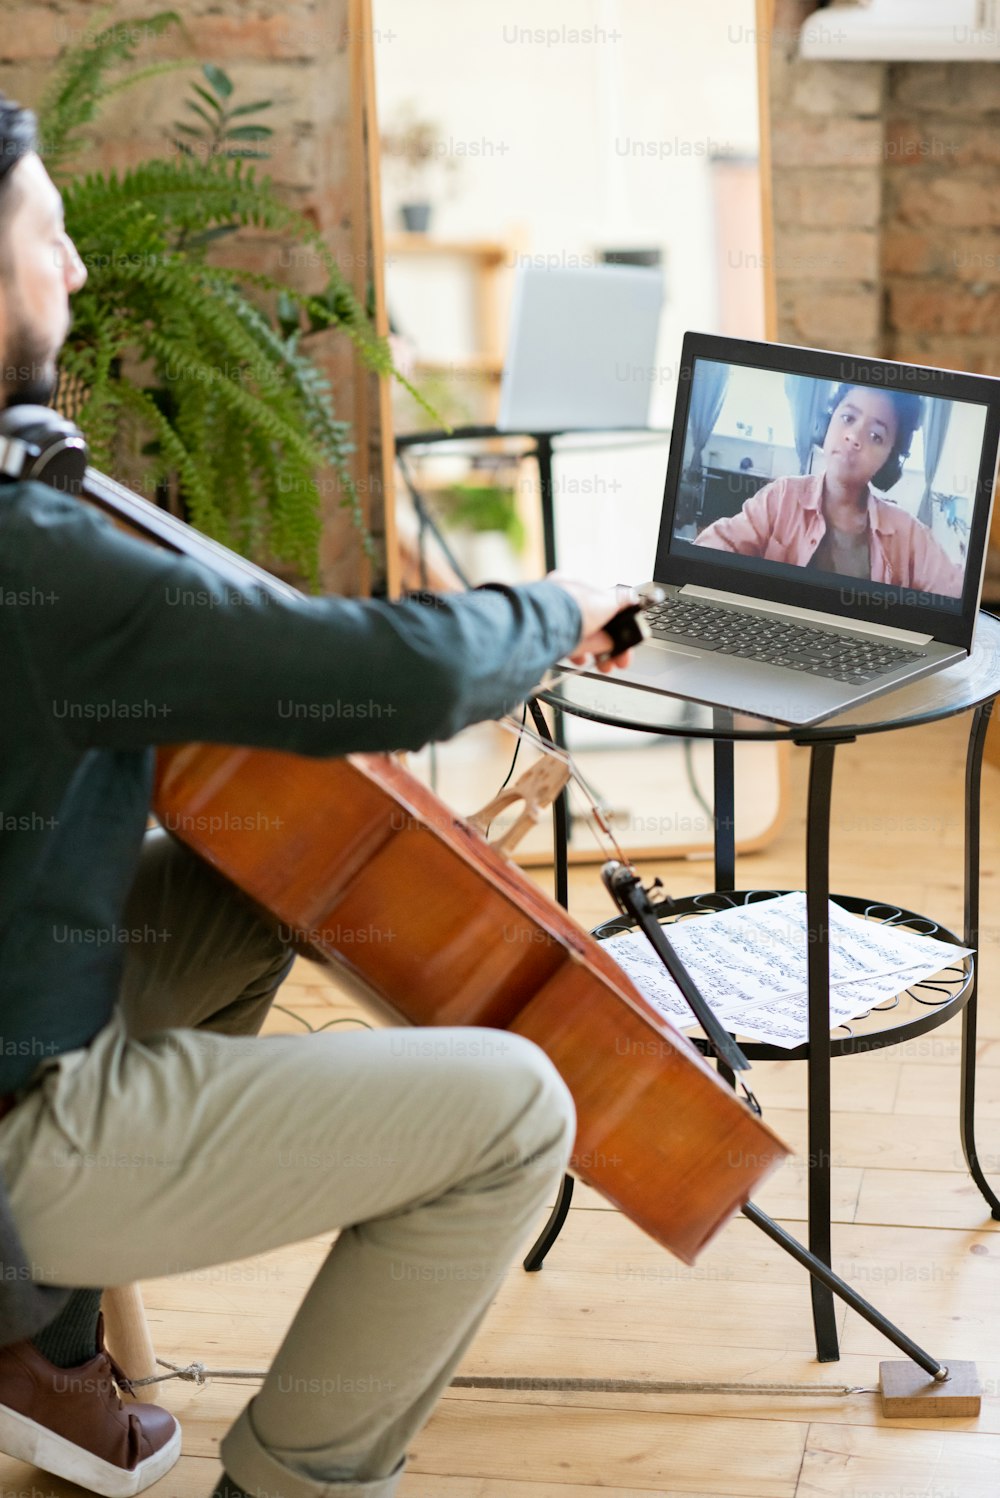 Écolier africain mignon sur l’écran d’un ordinateur portable regardant un professeur de musique jouant du violoncelle tout en �étant assis dans un environnement domestique